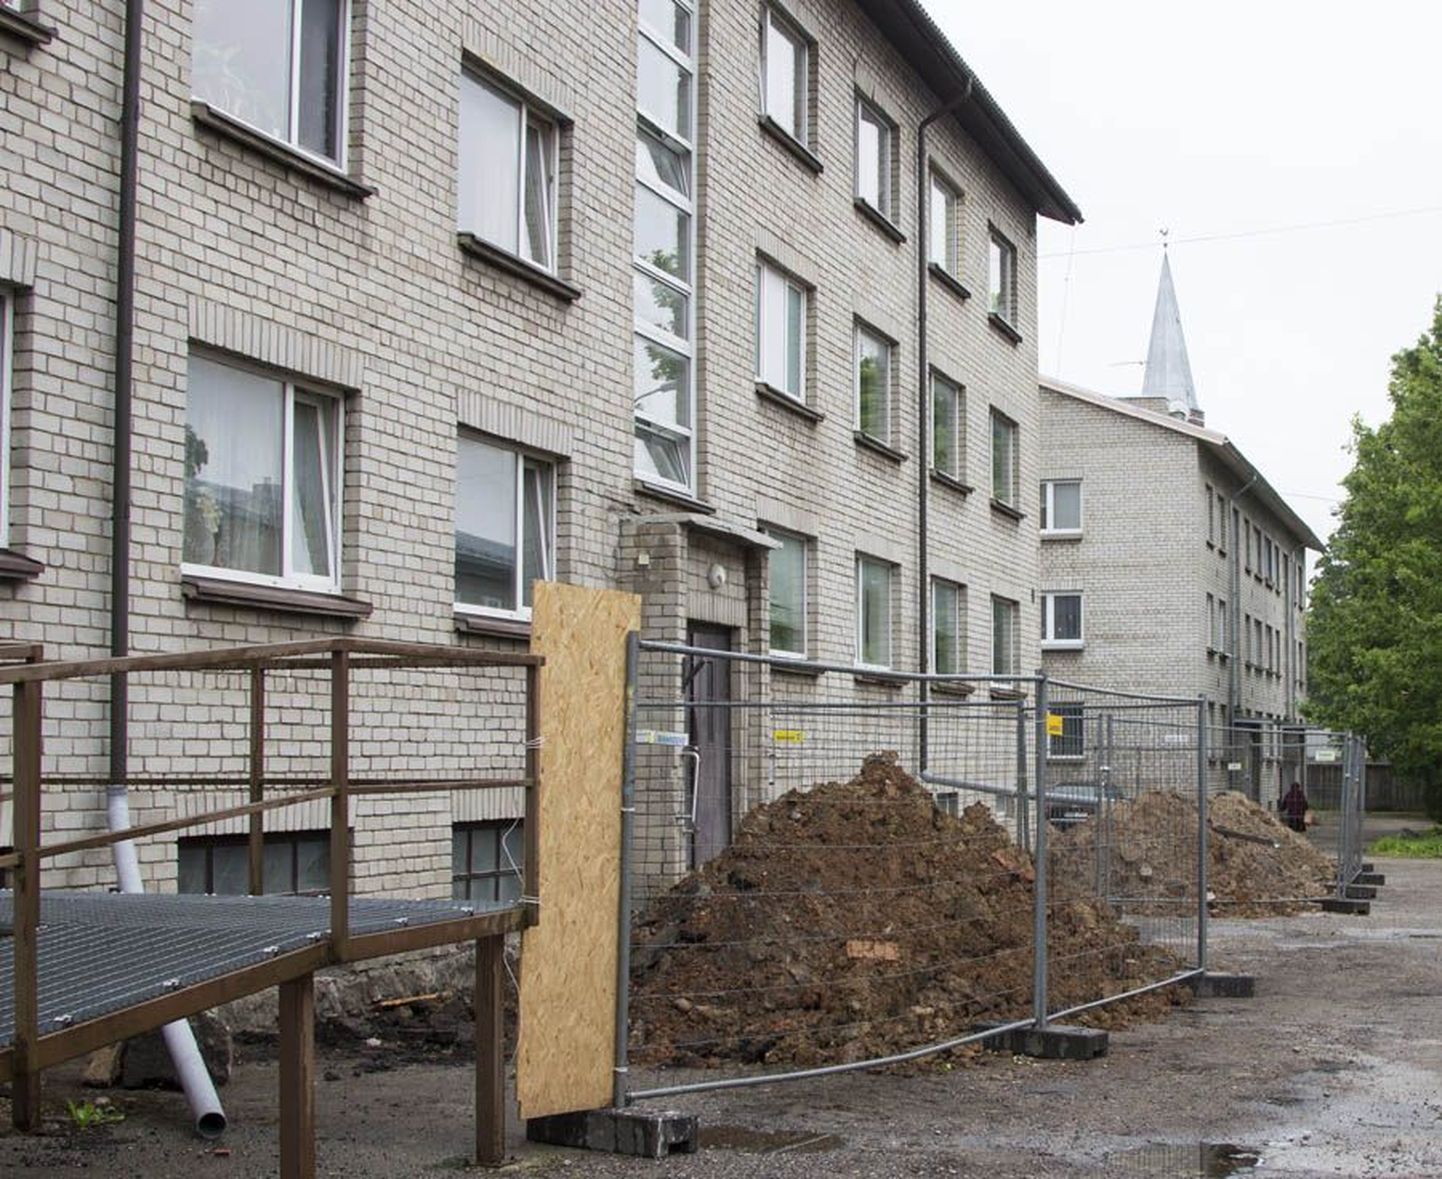 Leola tänav 12a sotsiaalmaja renoveerimine läheb peaaegu 70 000 euro võrra kallimaks, kui algul oli planeeritud. Töö eest tuleb maksta 245 396 eurot.